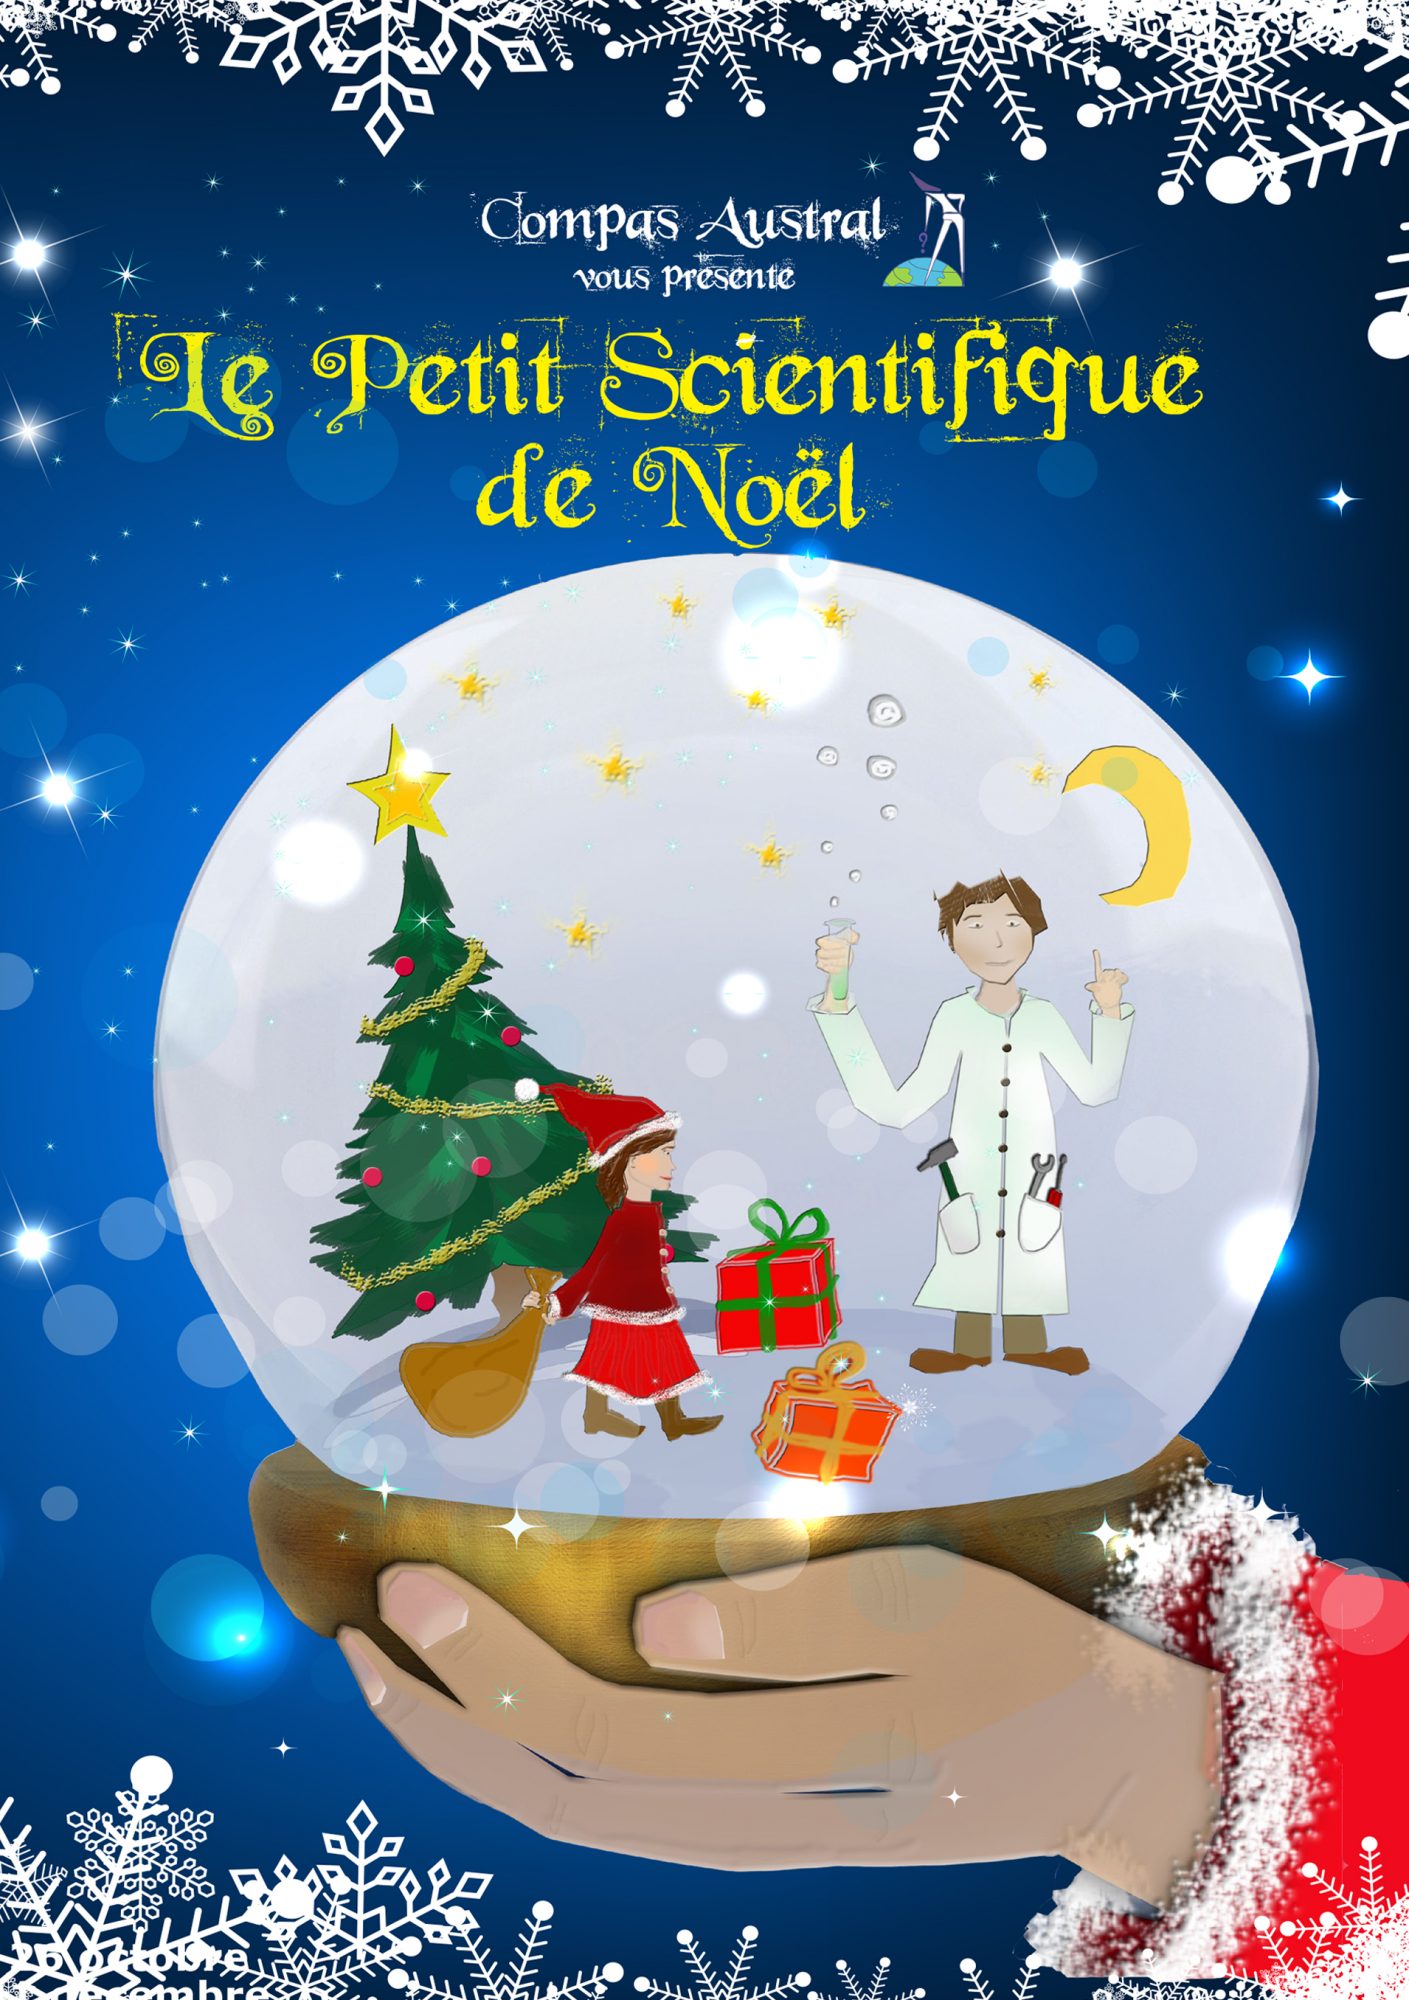 Spectacle scientifique et humoristique sur le thème de Noël